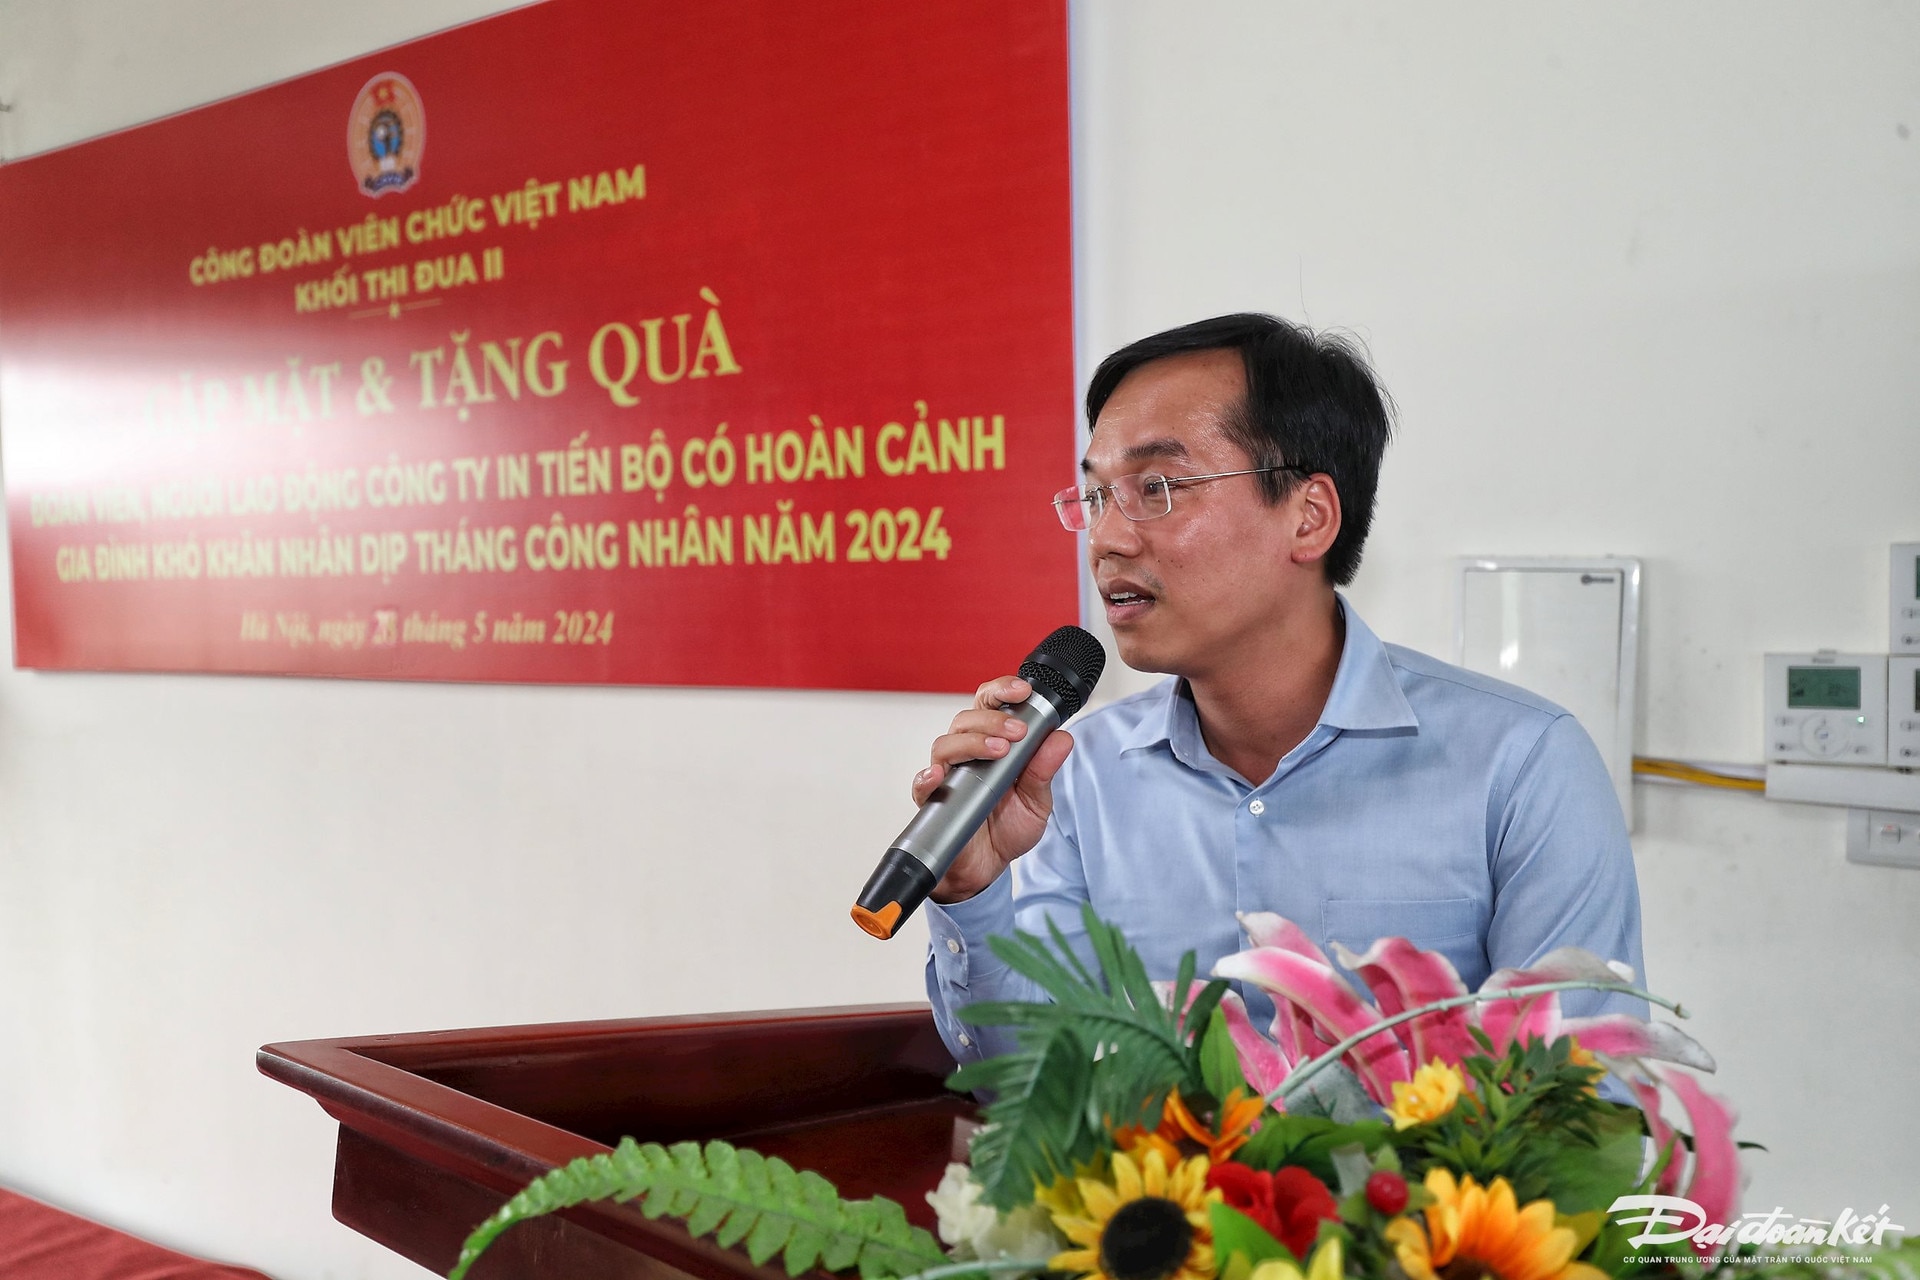 Ông Nguyễn Bình Minh, Chủ tịch Công đoàn cơ quan, Trung ương Mặt trận Tổ quốc Việt Nam phát biểu tại buổi tặng quà